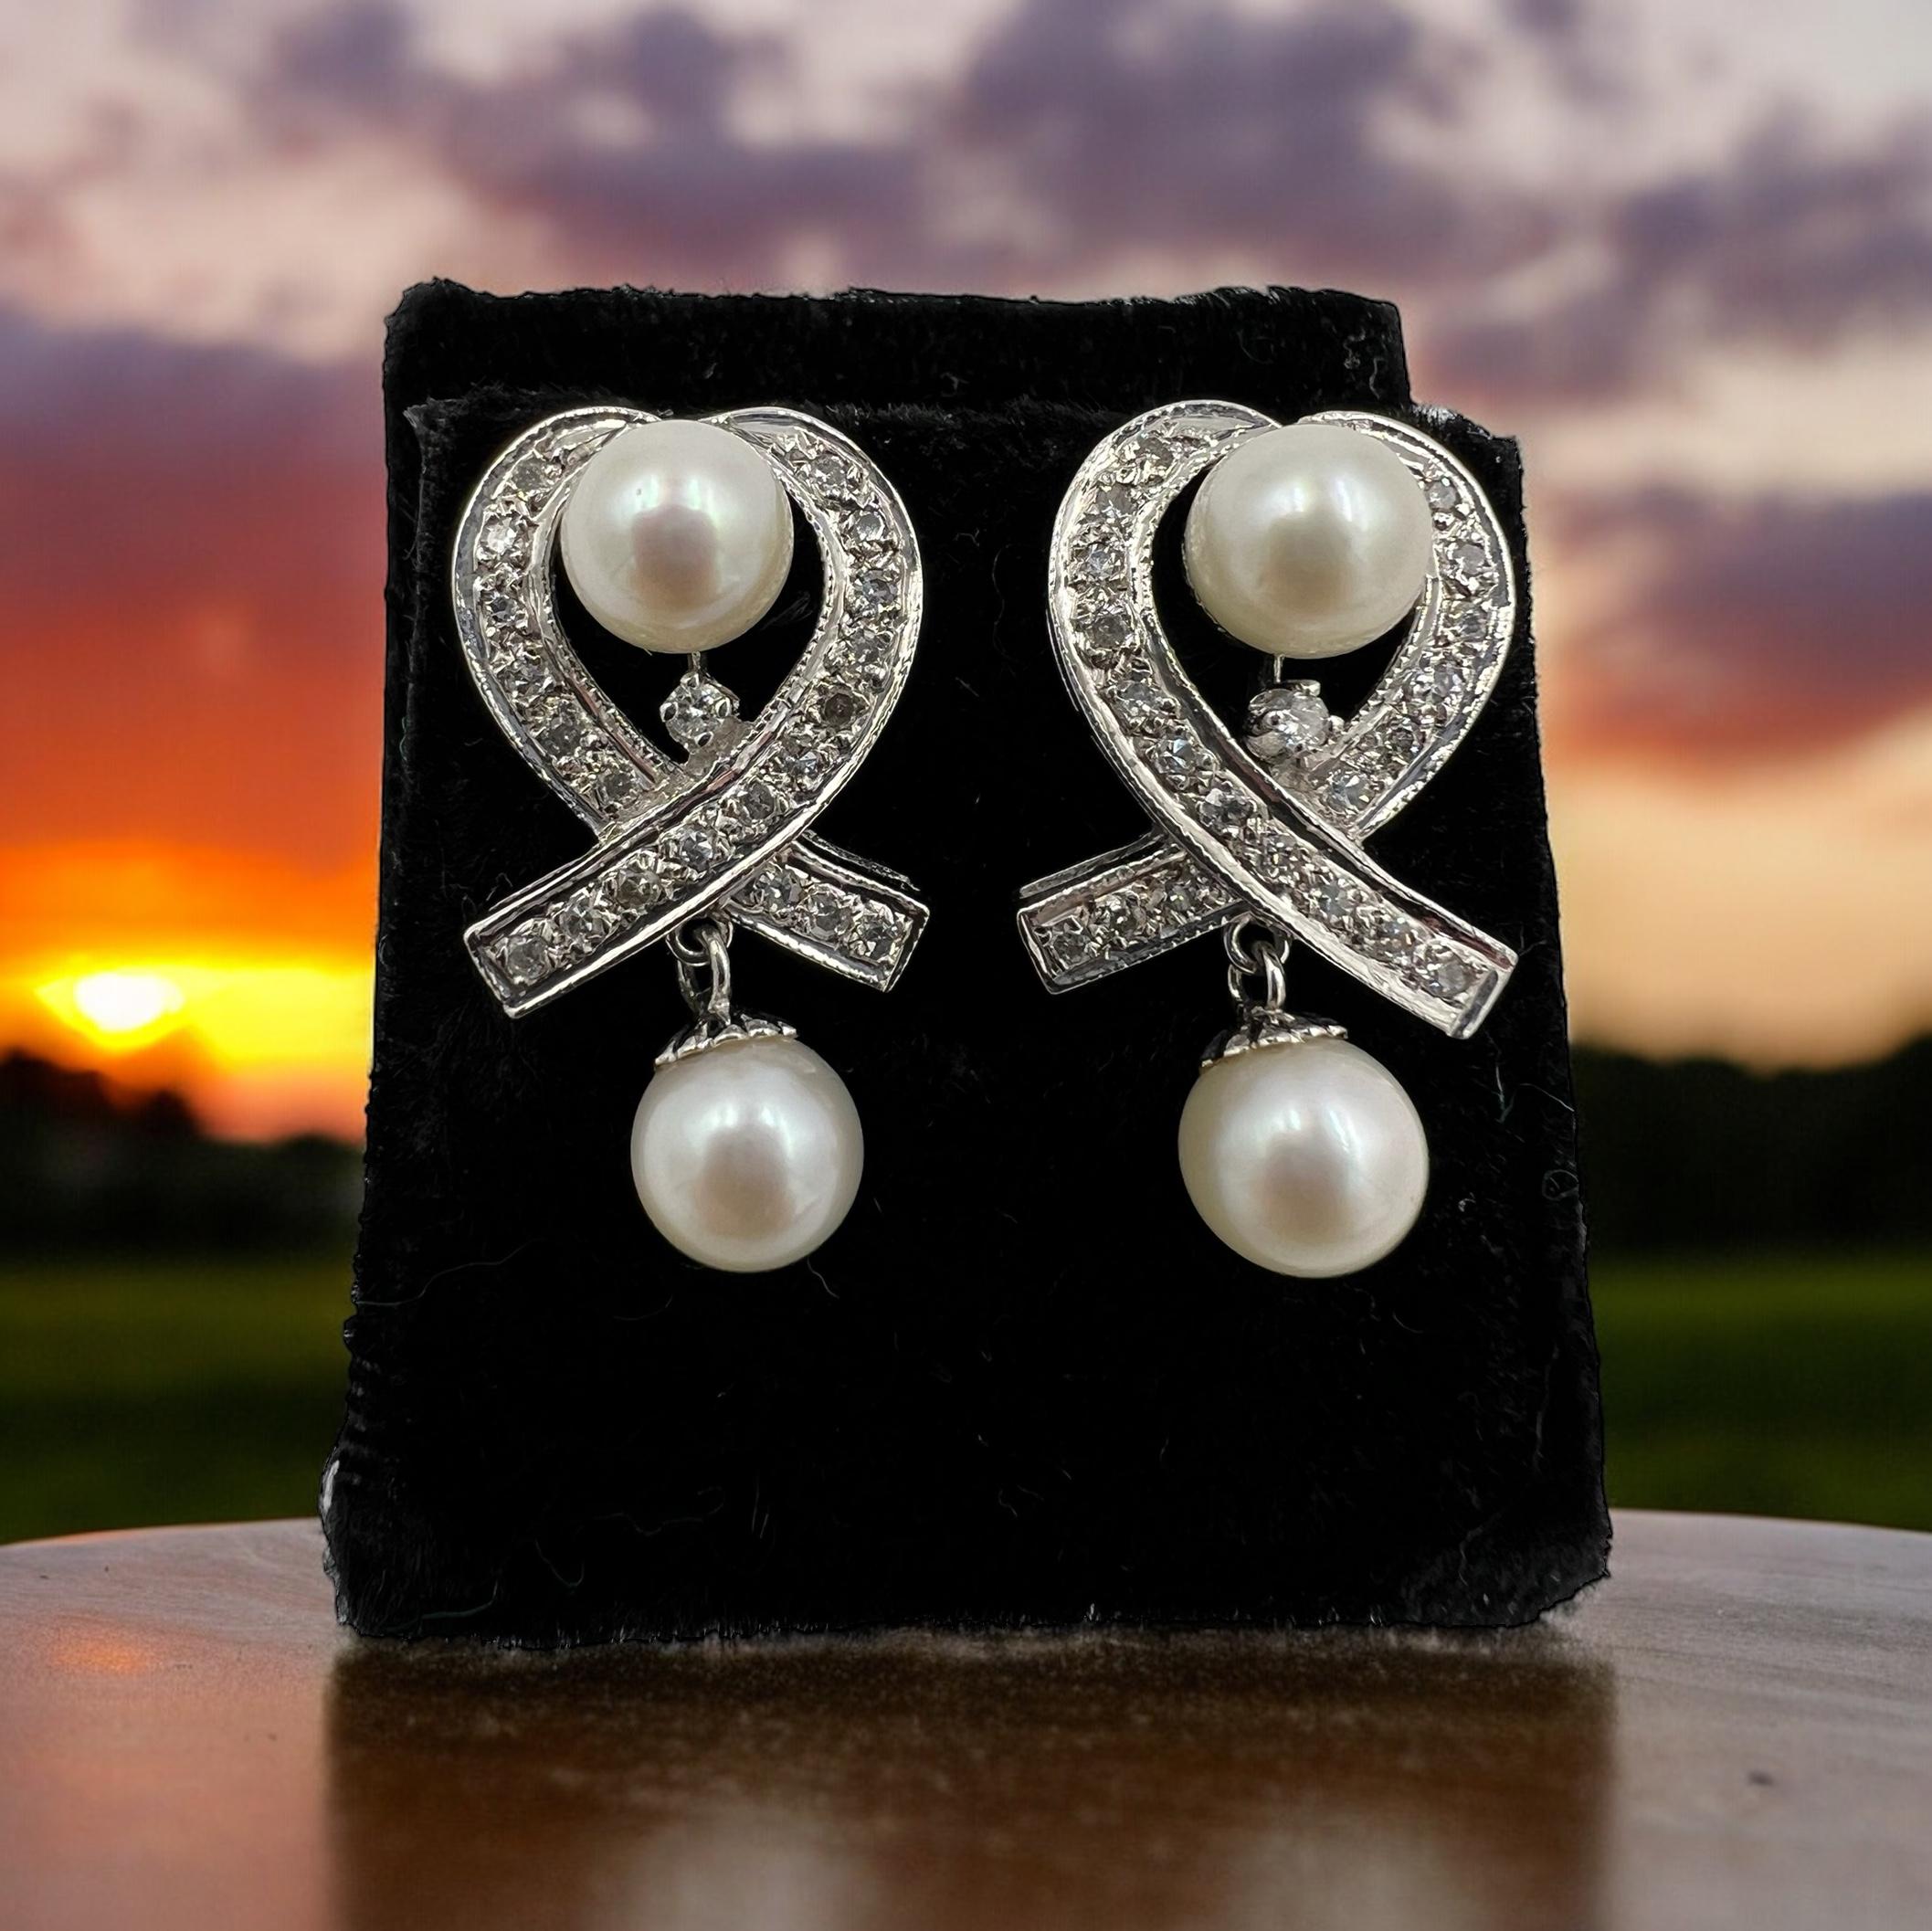 Boucles d'oreilles pendantes en or blanc, diamants et perles, datant des années 1950.

 À l'époque glamour des années 1950, les femmes se paraient de bijoux exquis qui respiraient l'élégance et la sophistication. L'une de ces pièces intemporelles